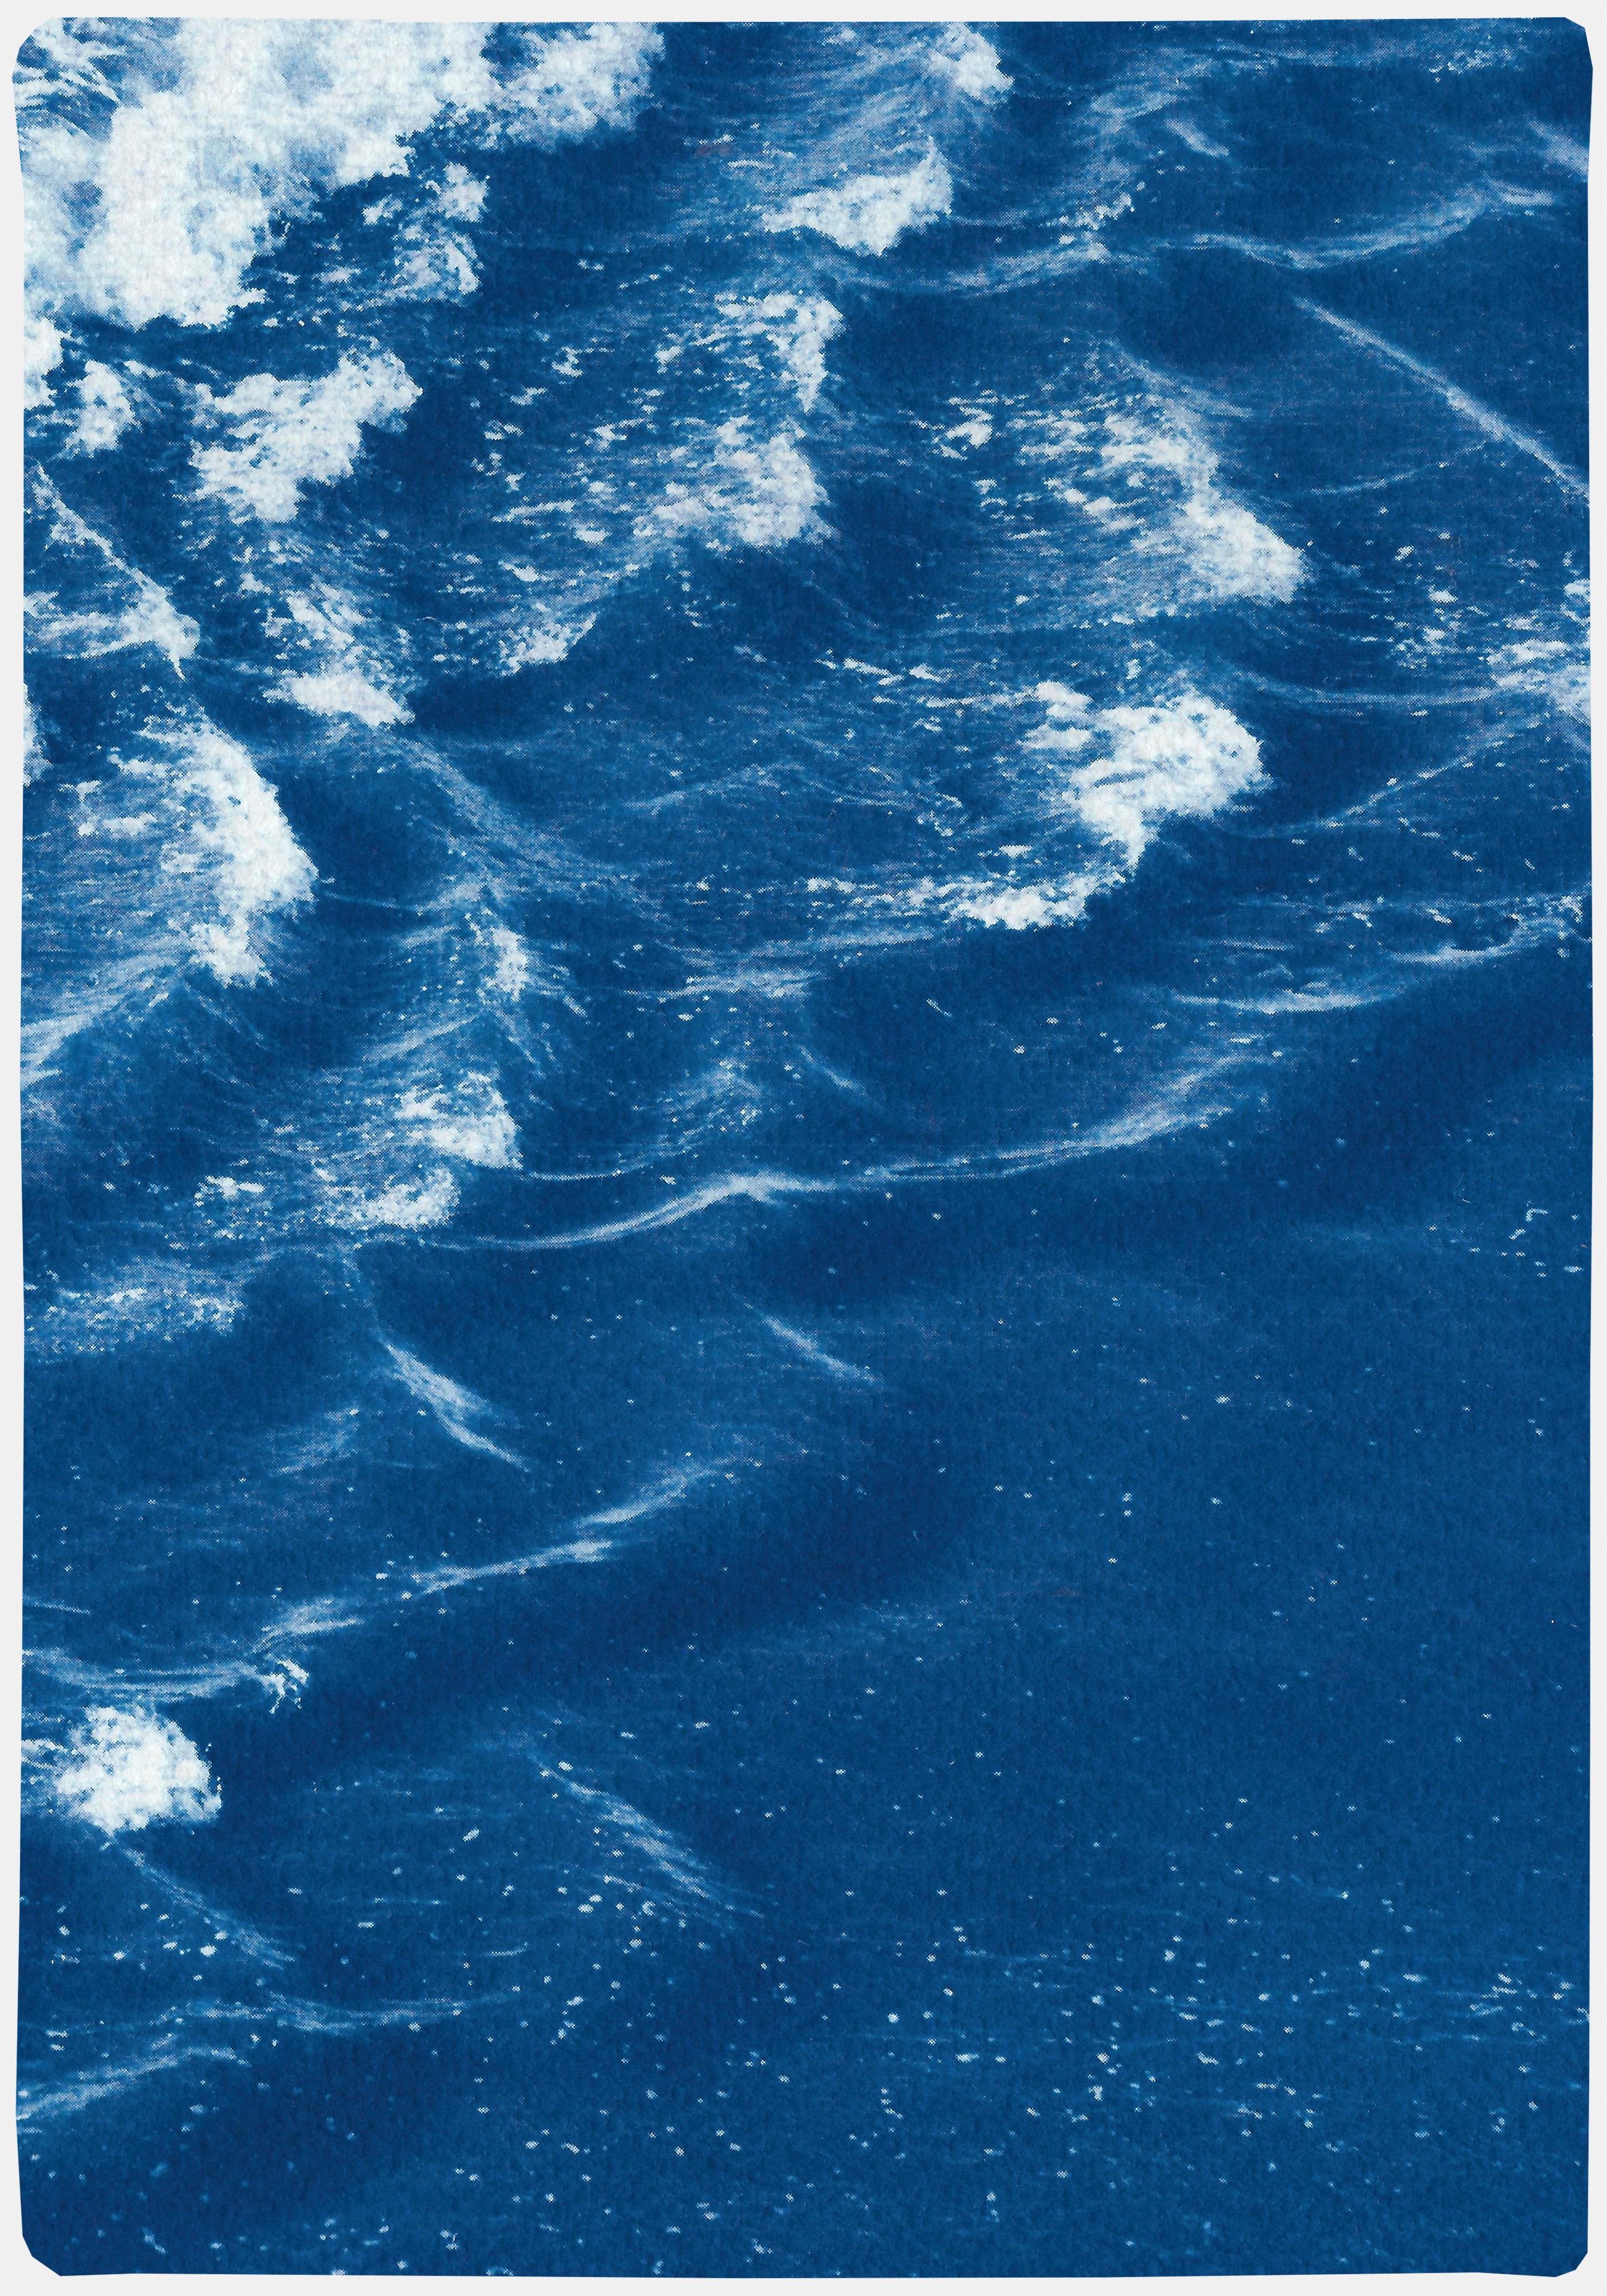 Rolling Waves off Sidney, Seascape Diptych Cyanotype, Australian Coast, Indigo - Modern Art by Kind of Cyan